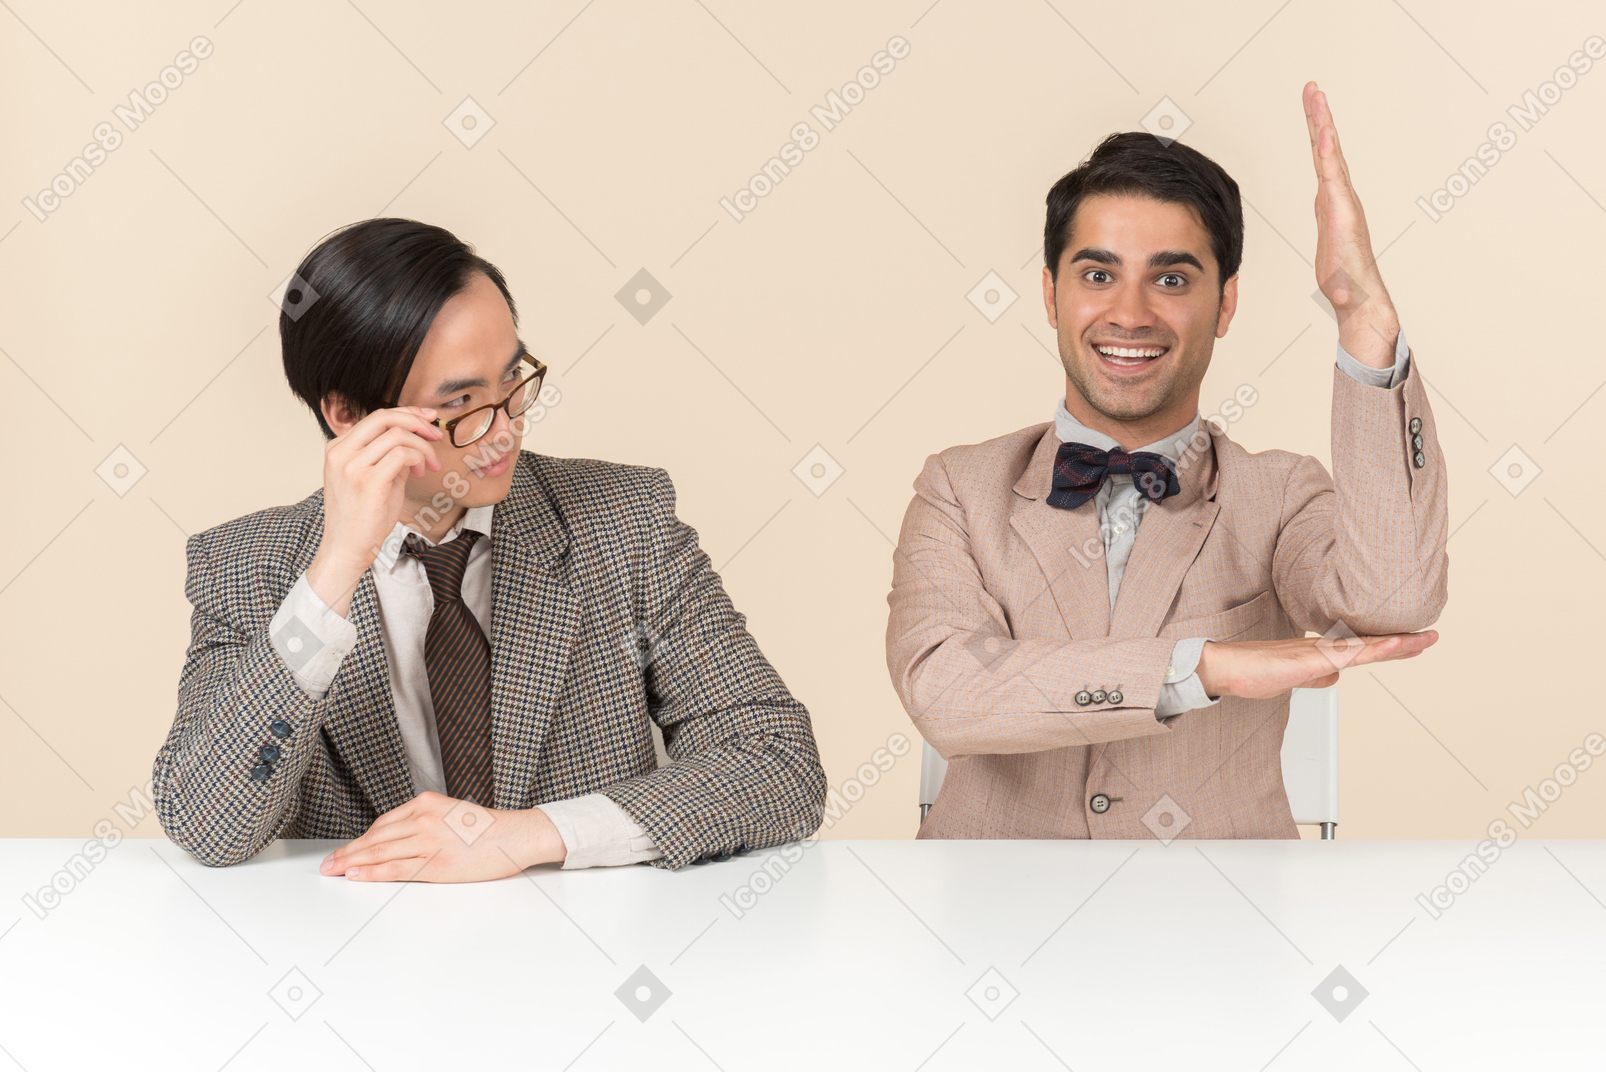 Dos jóvenes nerds sentados a la mesa y uno de ellos levanta la mano